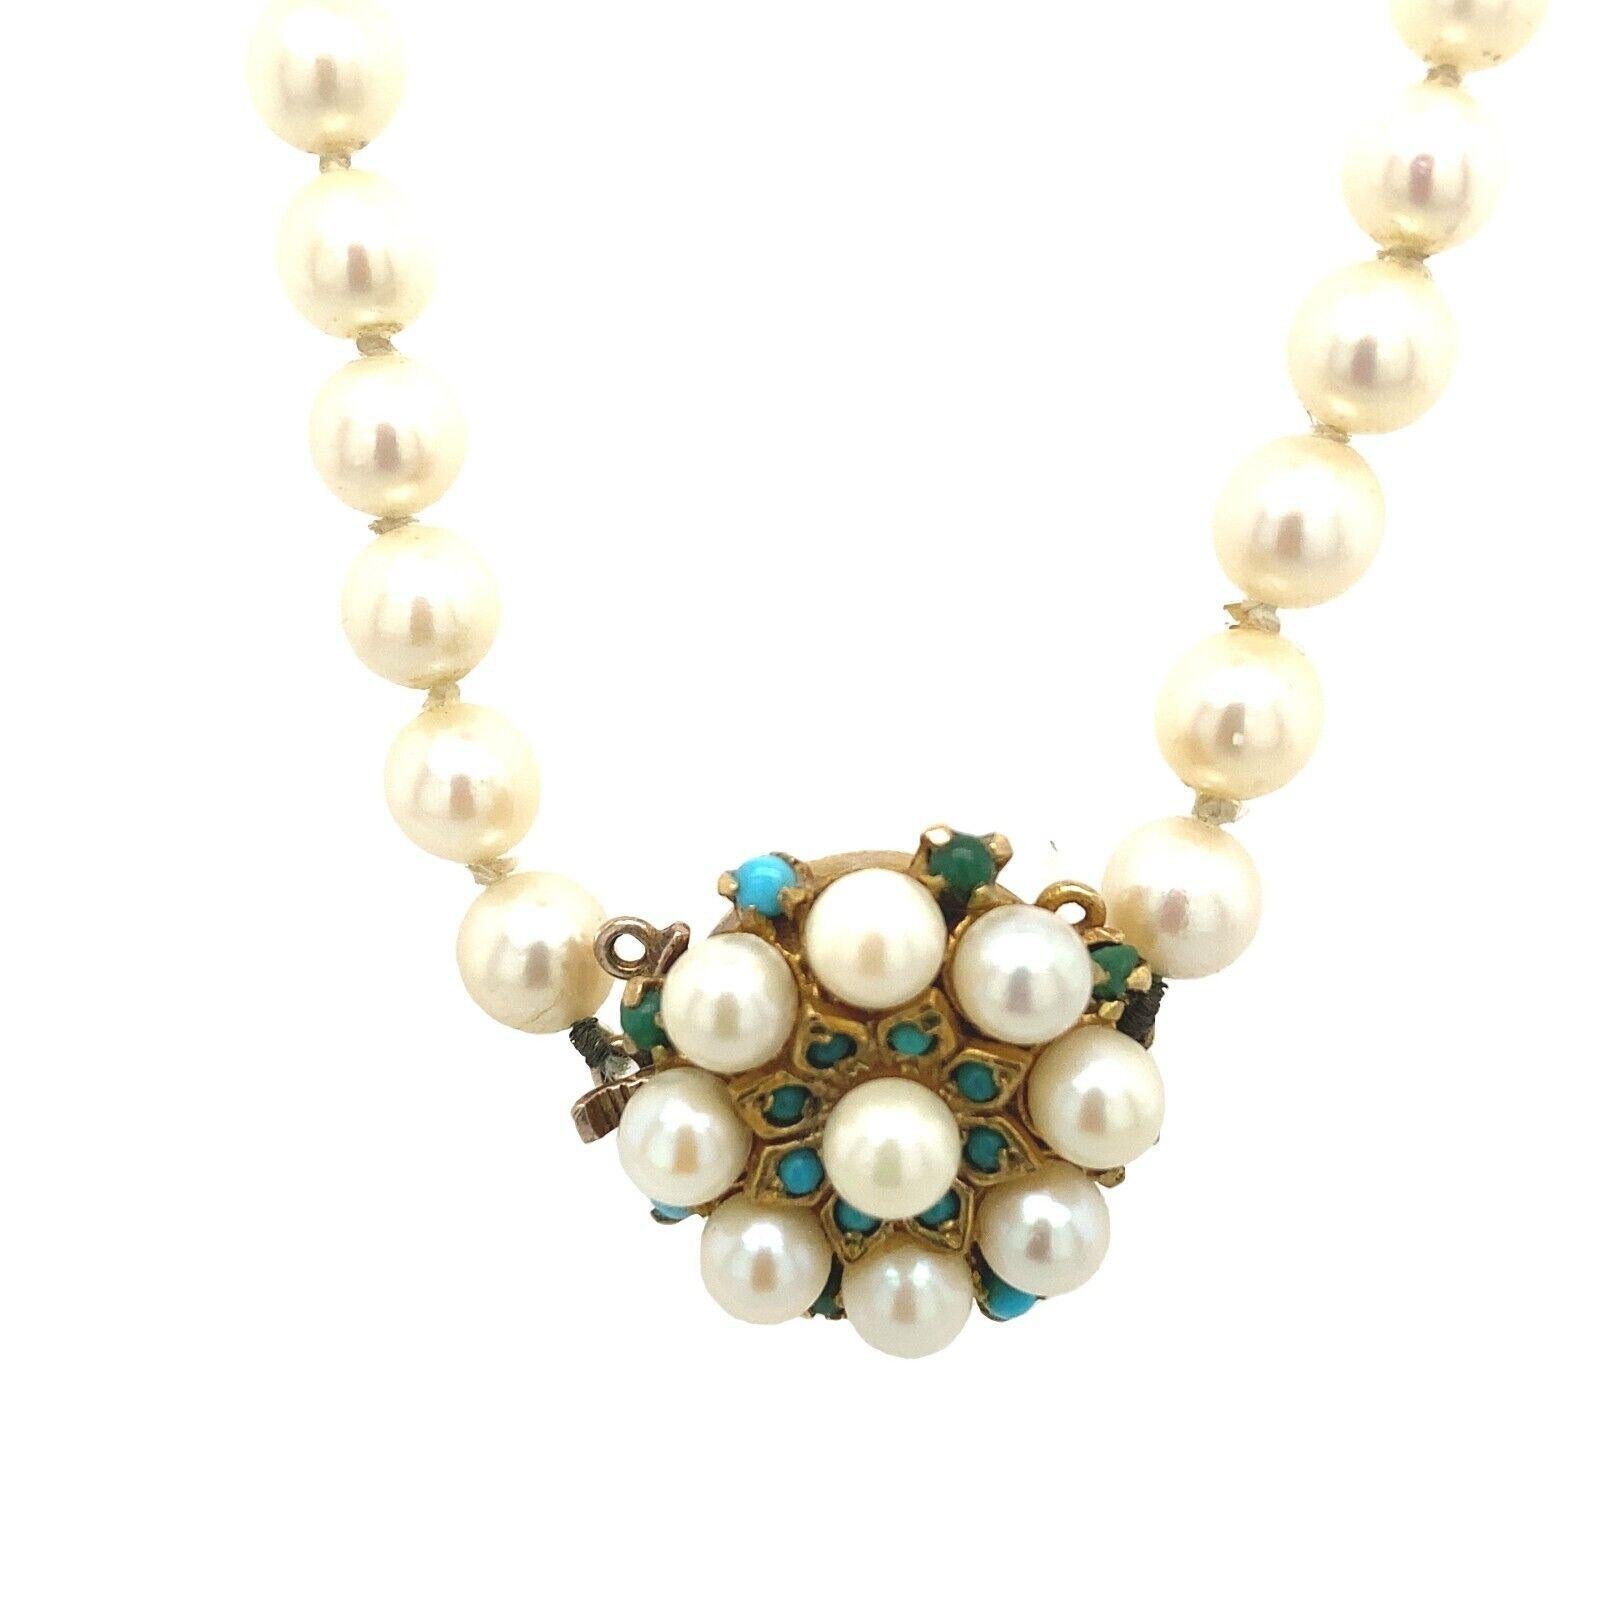 Collier de perles de culture vintage avec fermoir en or jaune 9 carats

Ce collier d'inspiration vintage présente des perles de culture de 6,3 mm encadrées par un fermoir en or jaune 9ct, serties de 16 turquoises et de 9 perles. C'est un classique